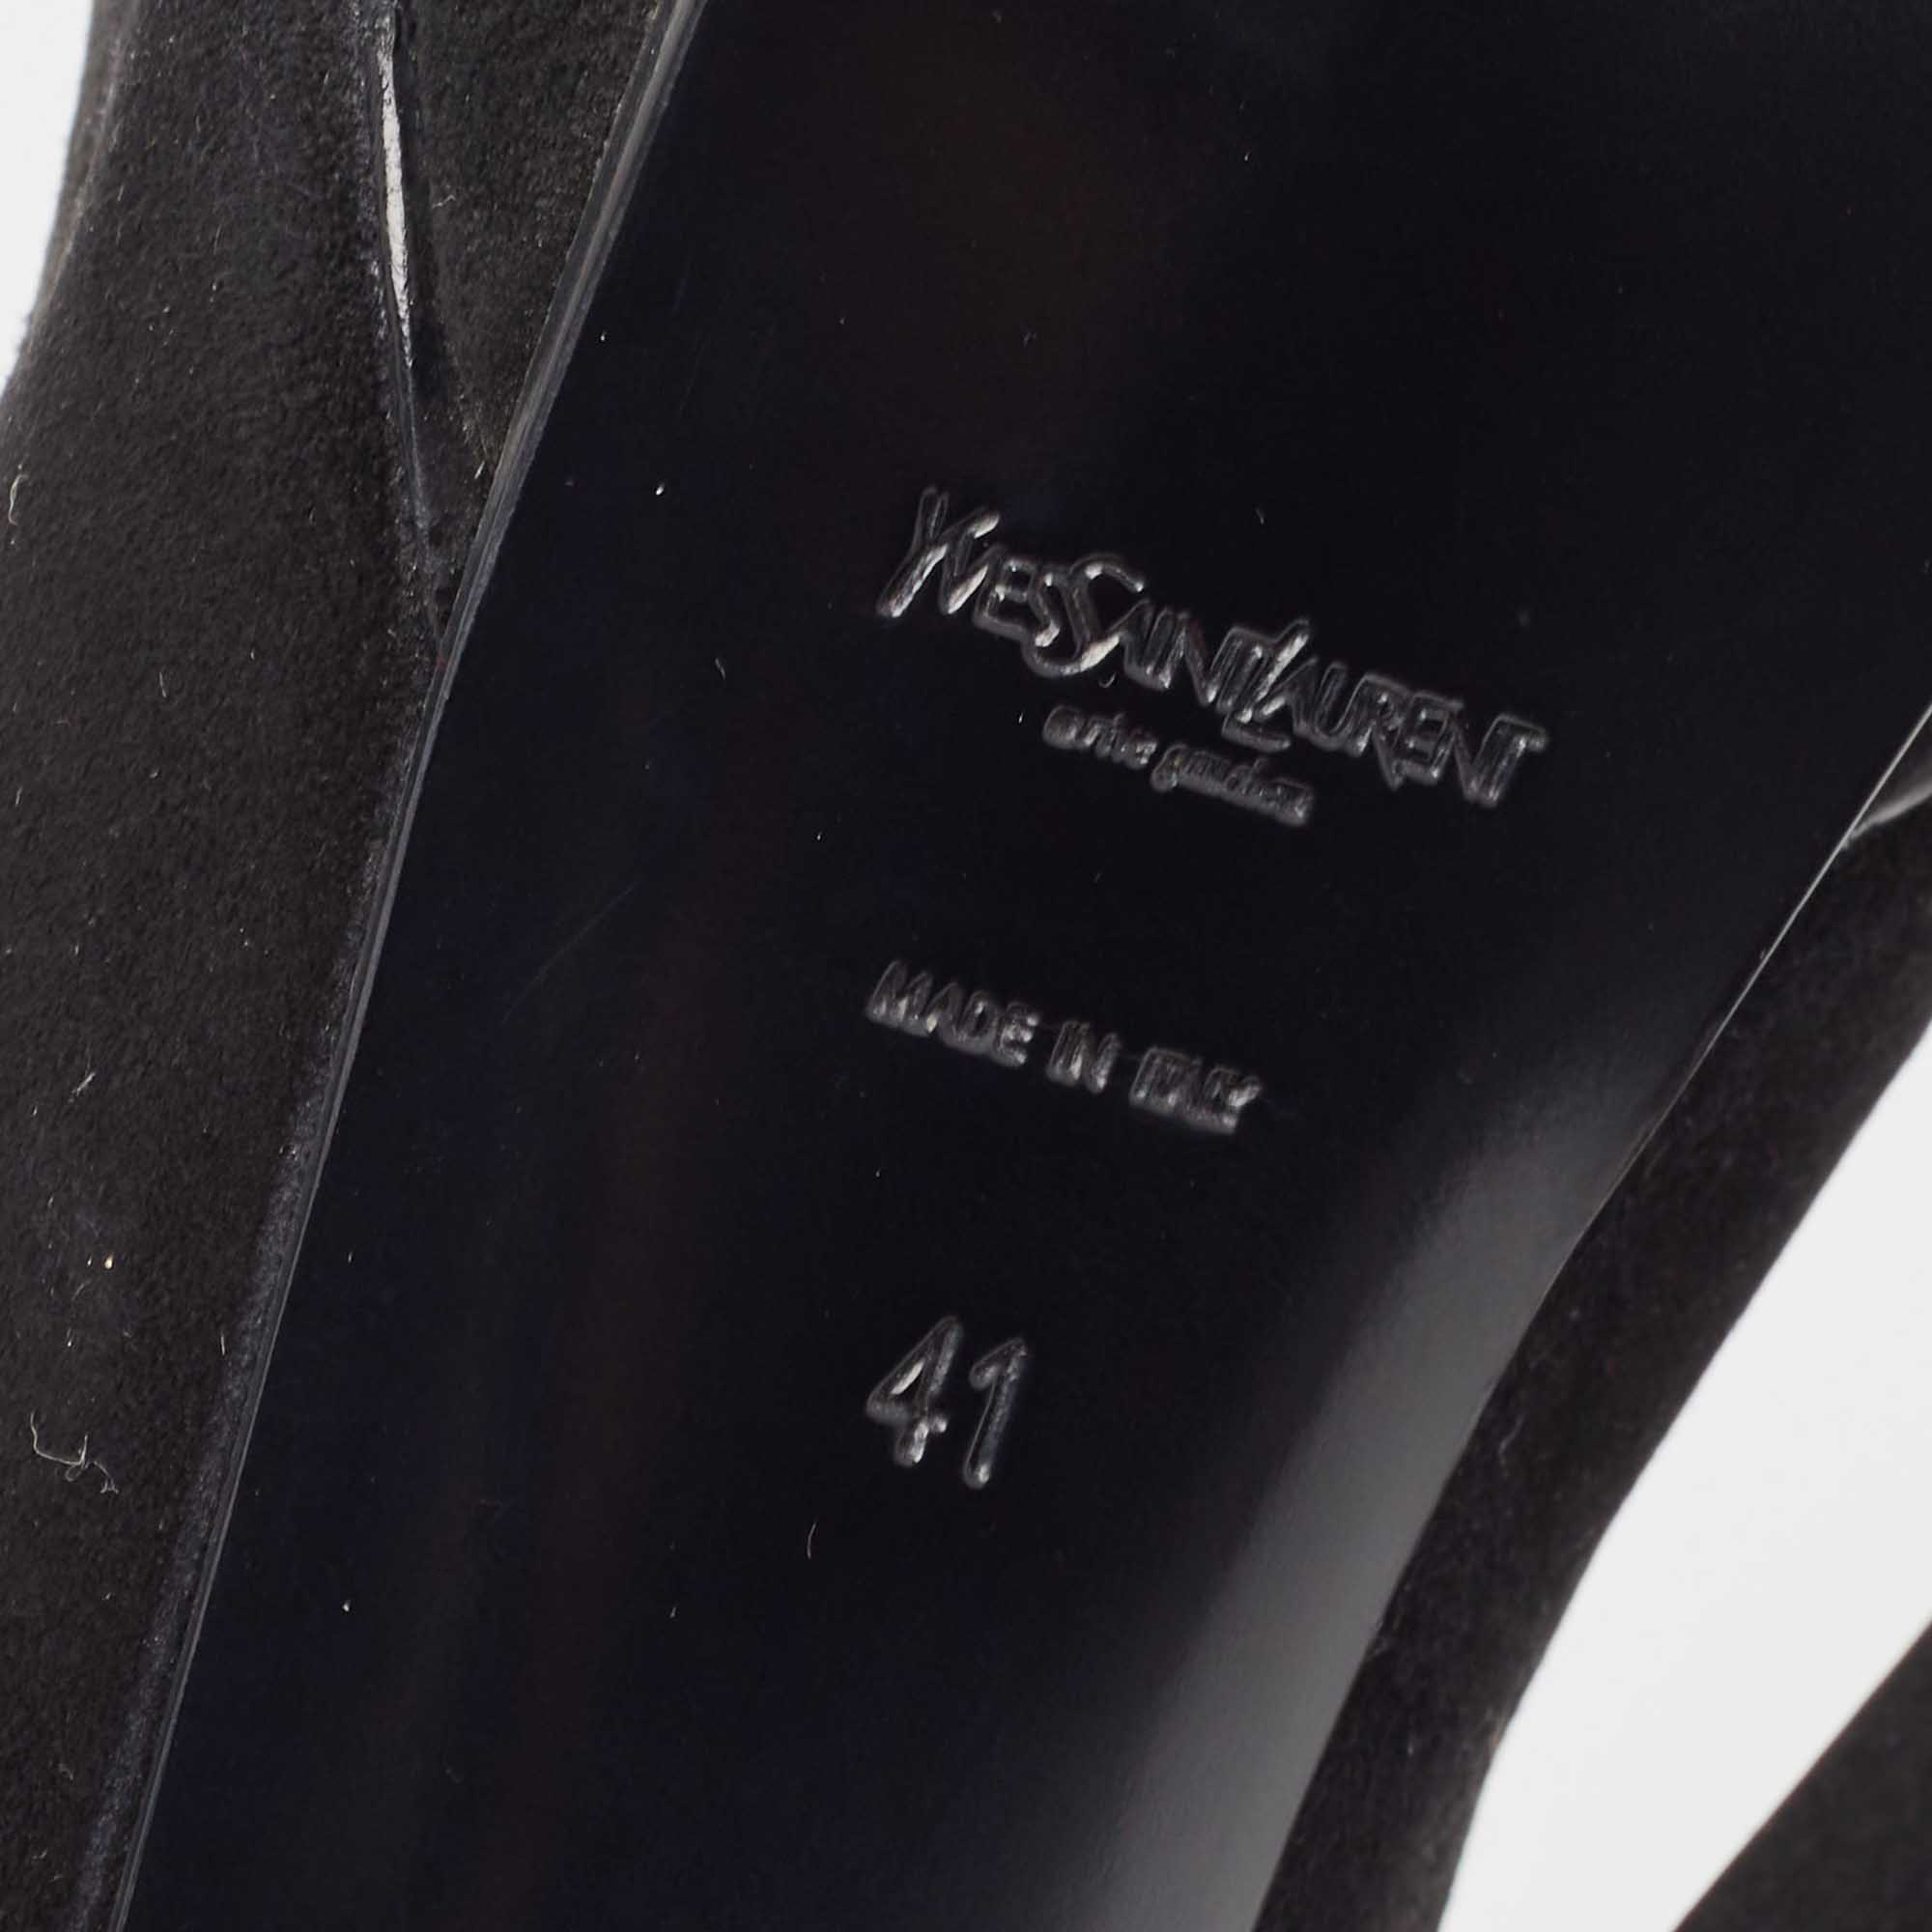 Saint Laurent Black Suede Fringe Chain Slingback Sandals Size 41